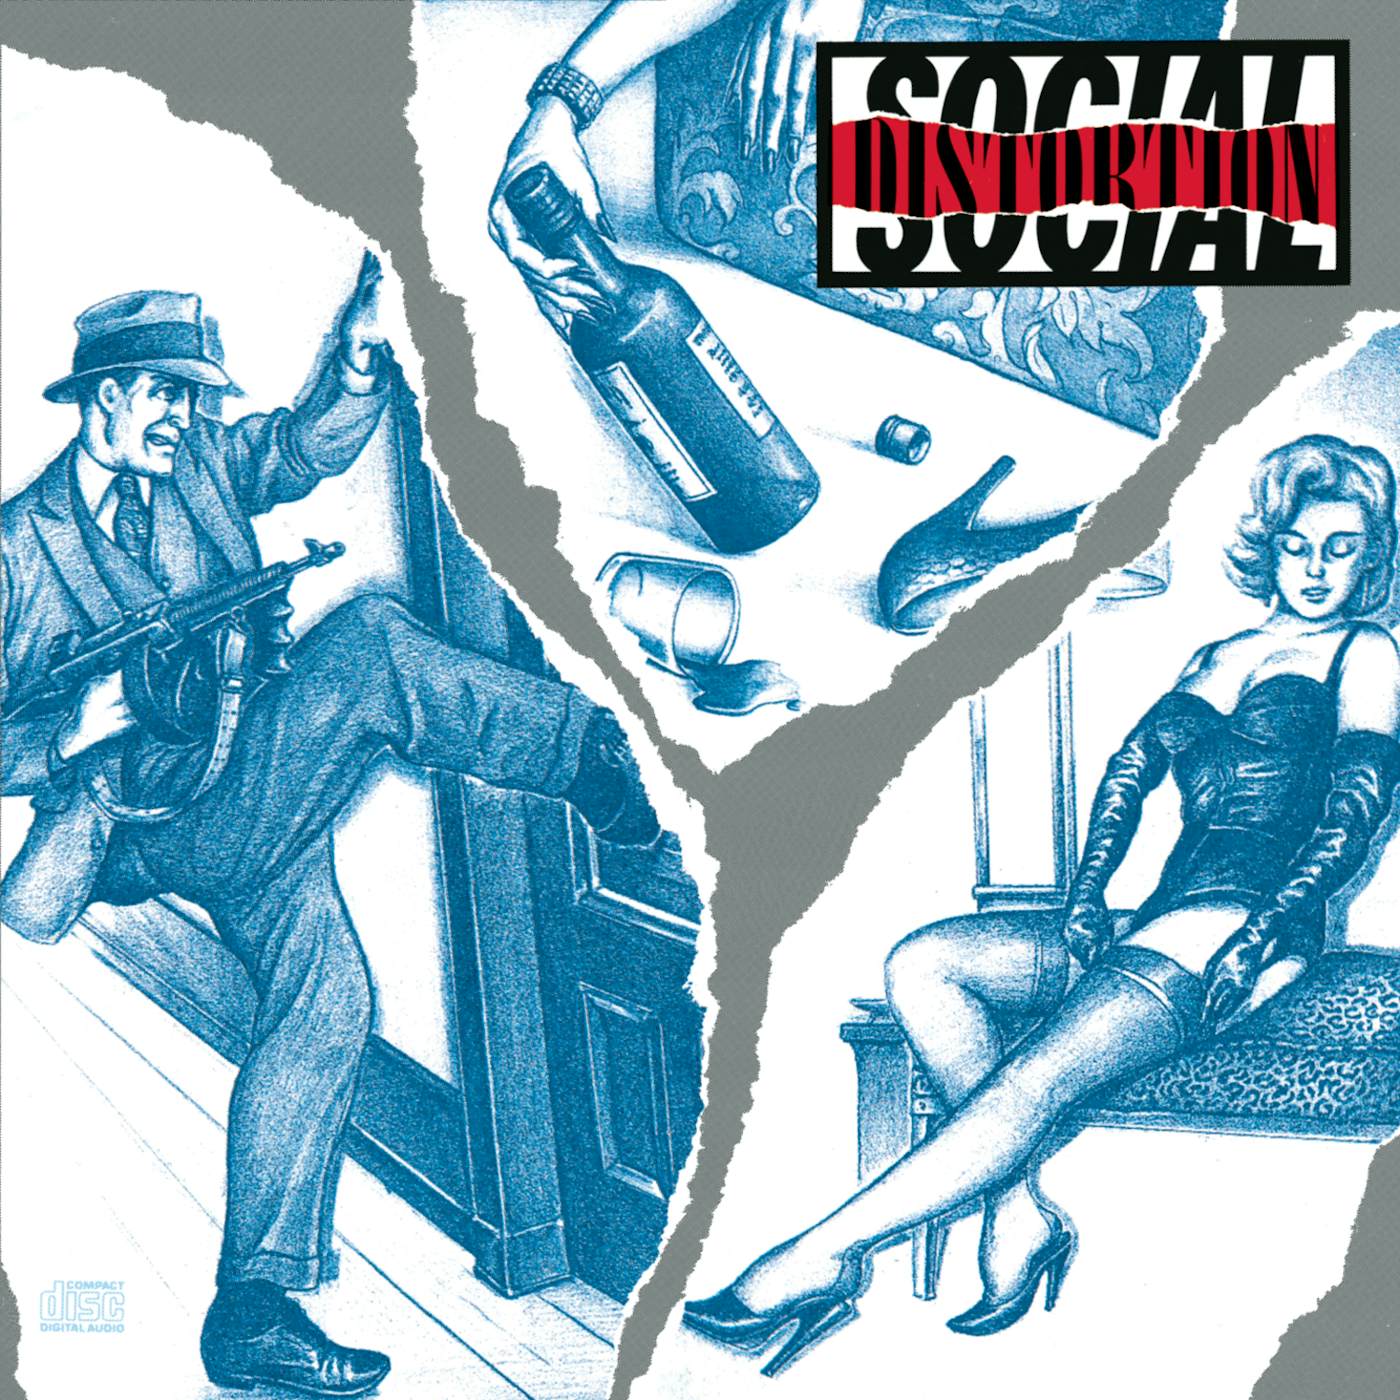 SOCIAL DISTORTION CD